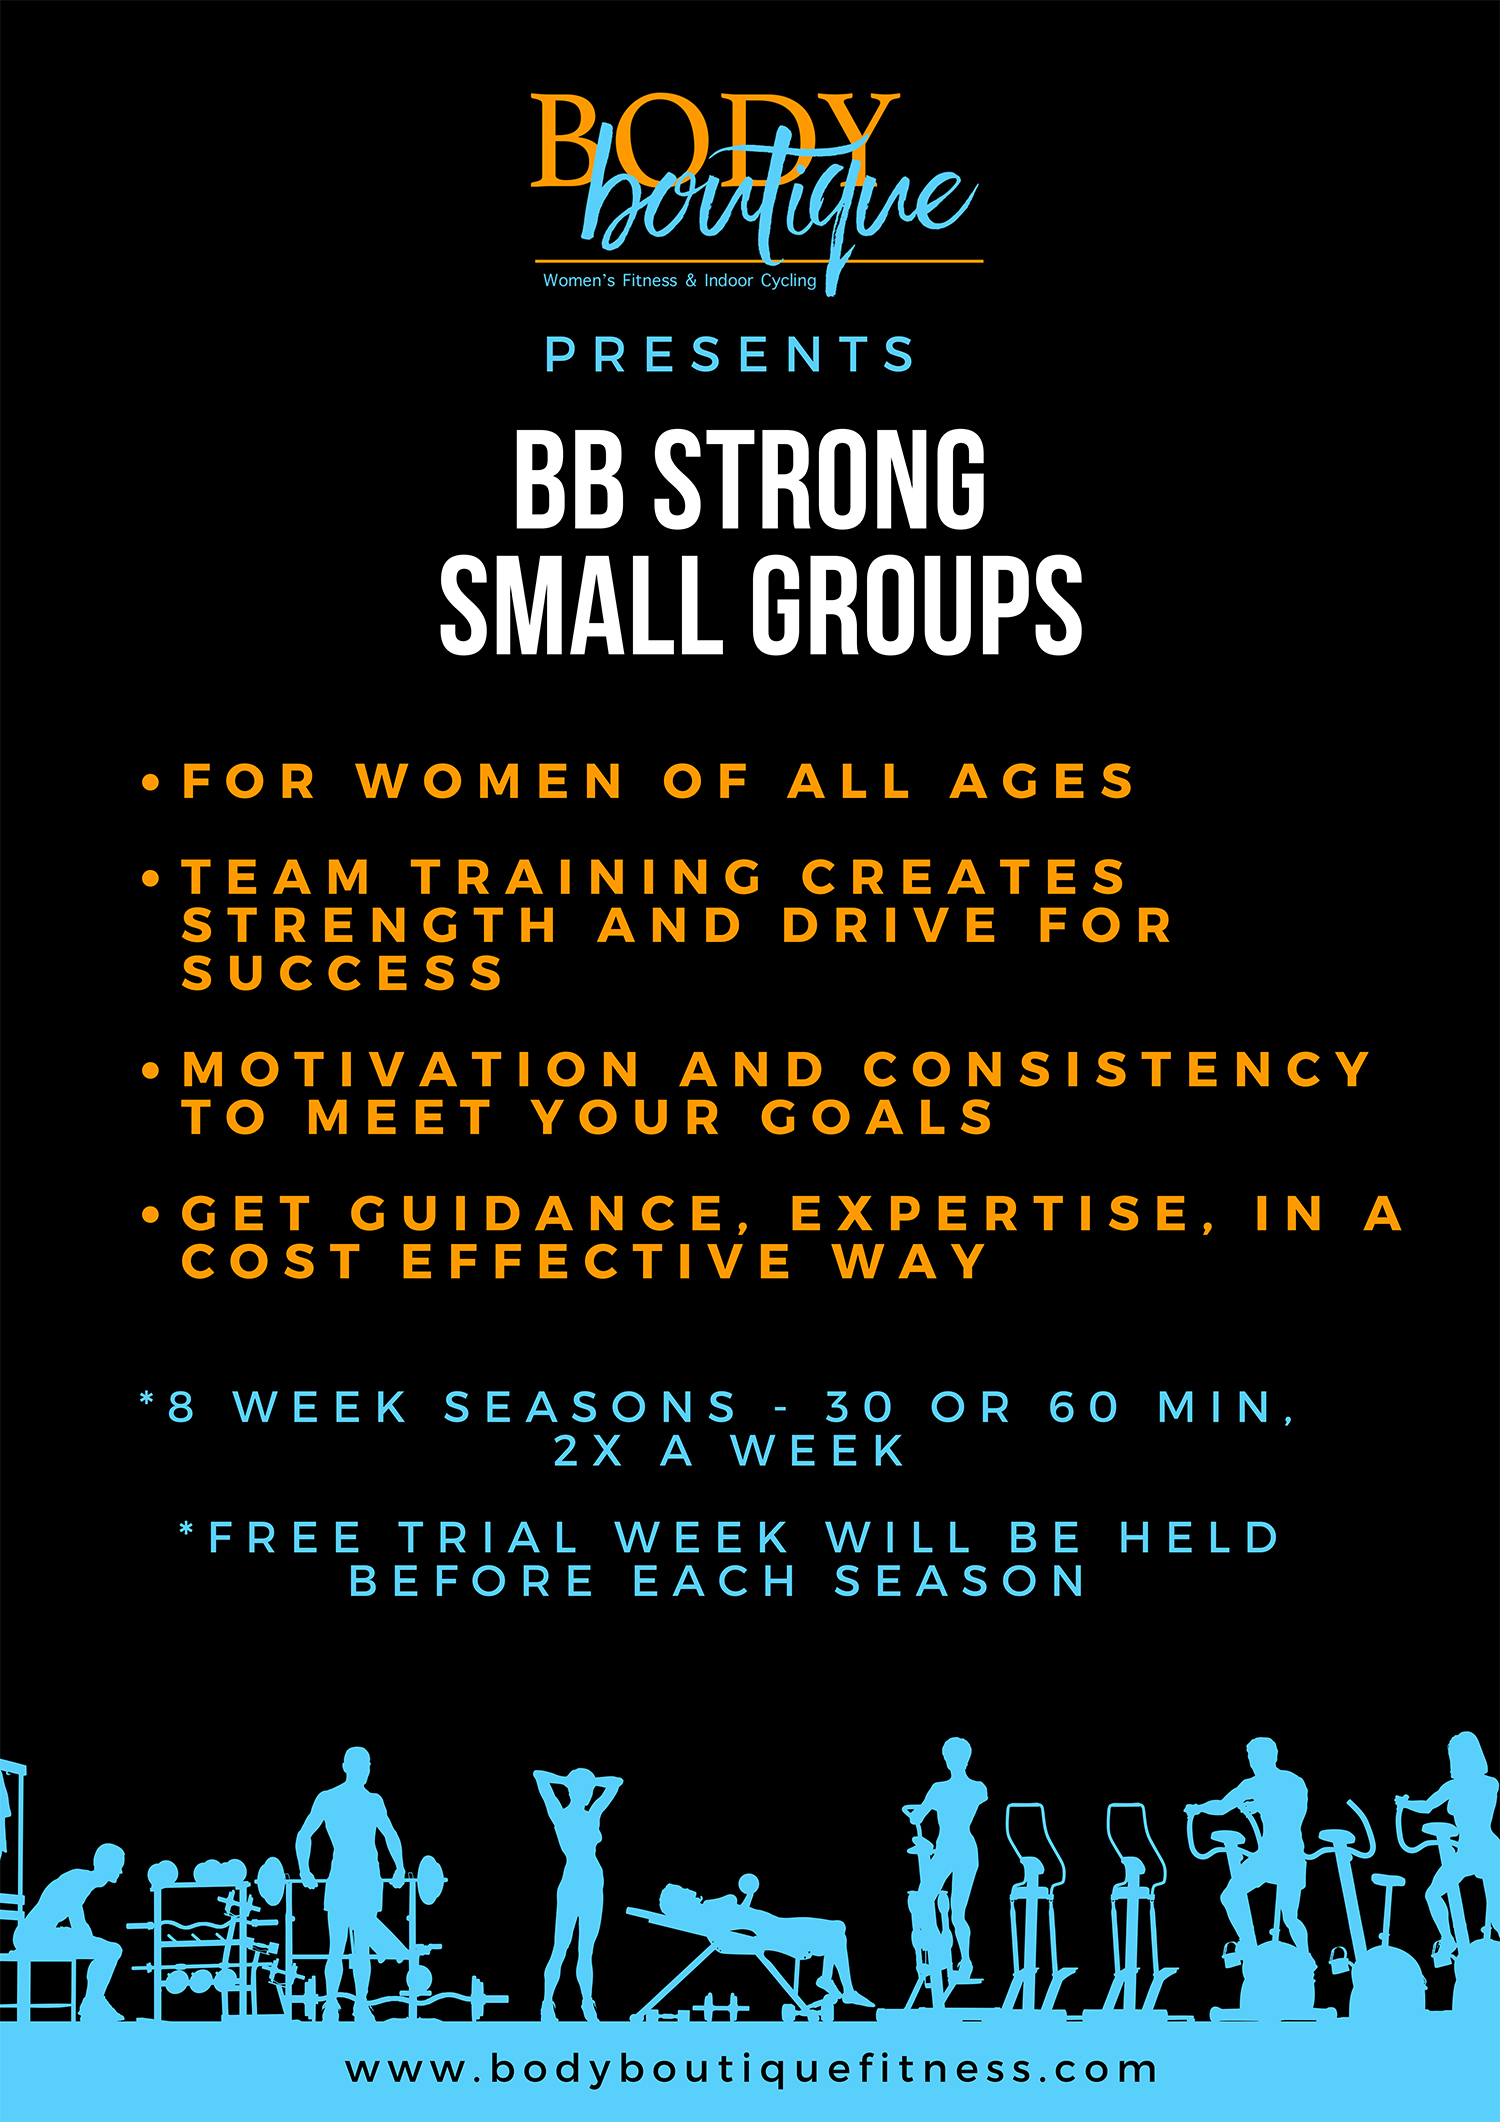 BB Strong Program Description